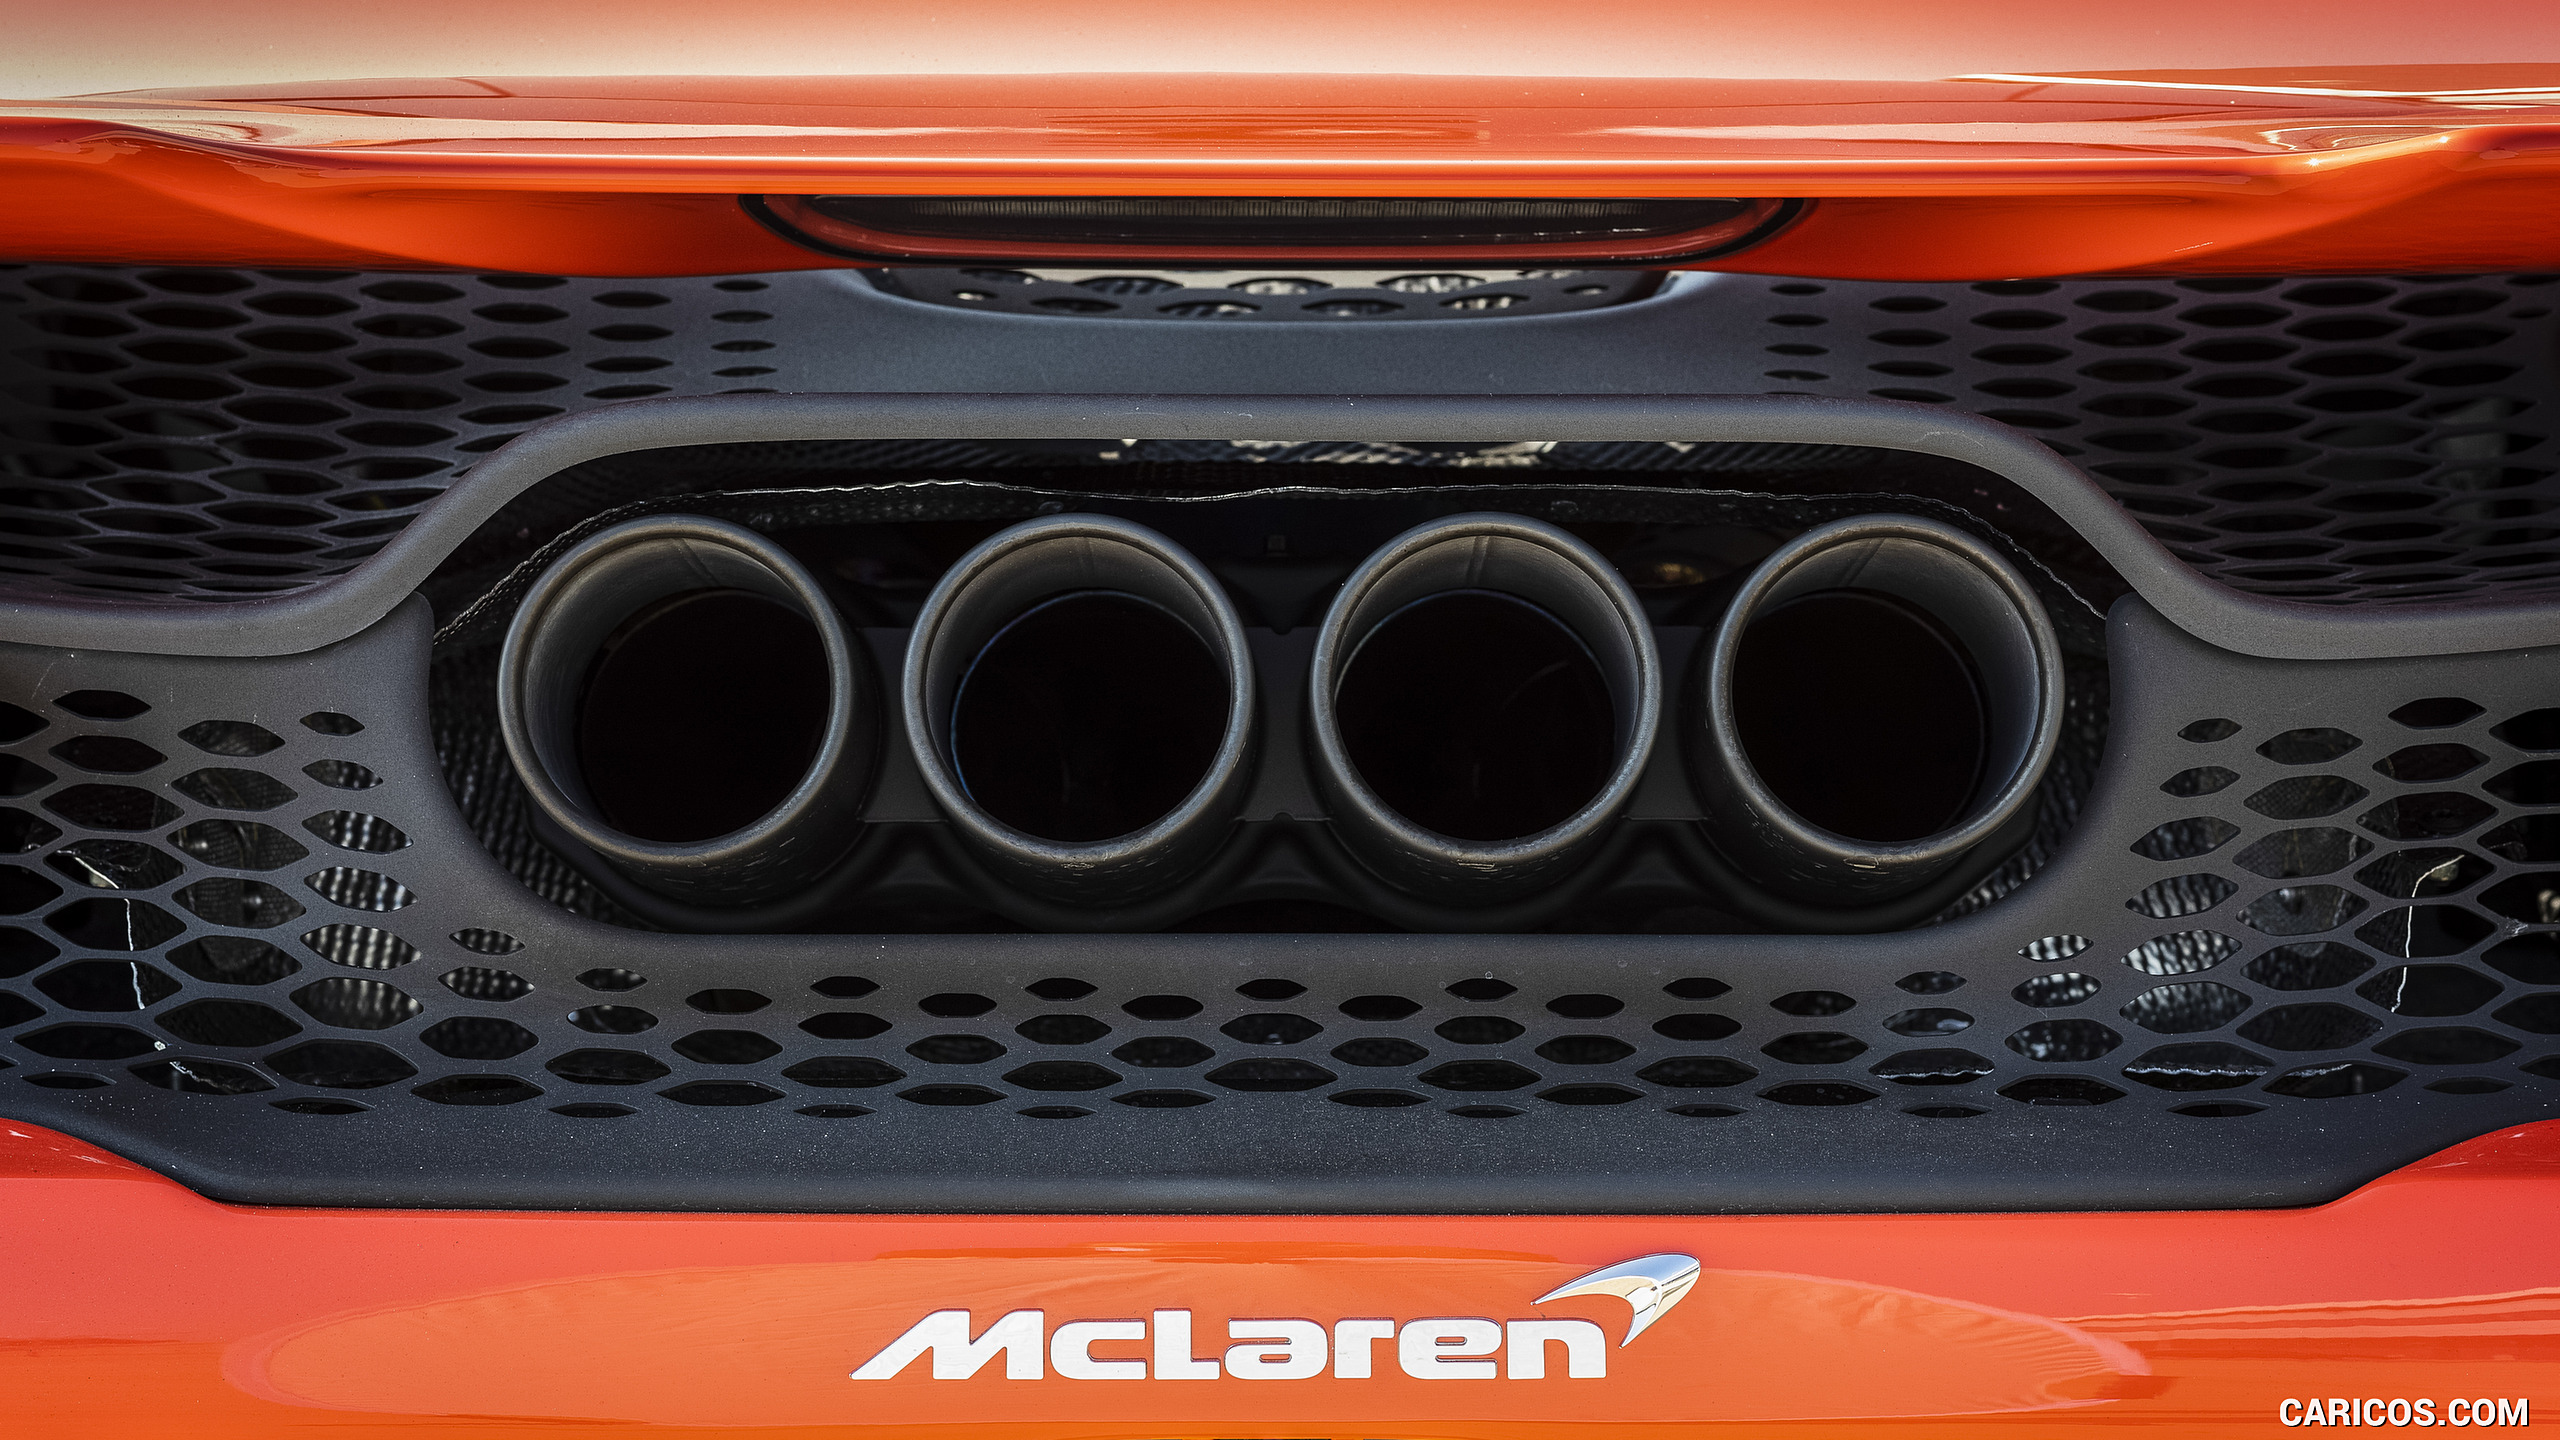 2021 McLaren 765LT - Exhaust, #100 of 159